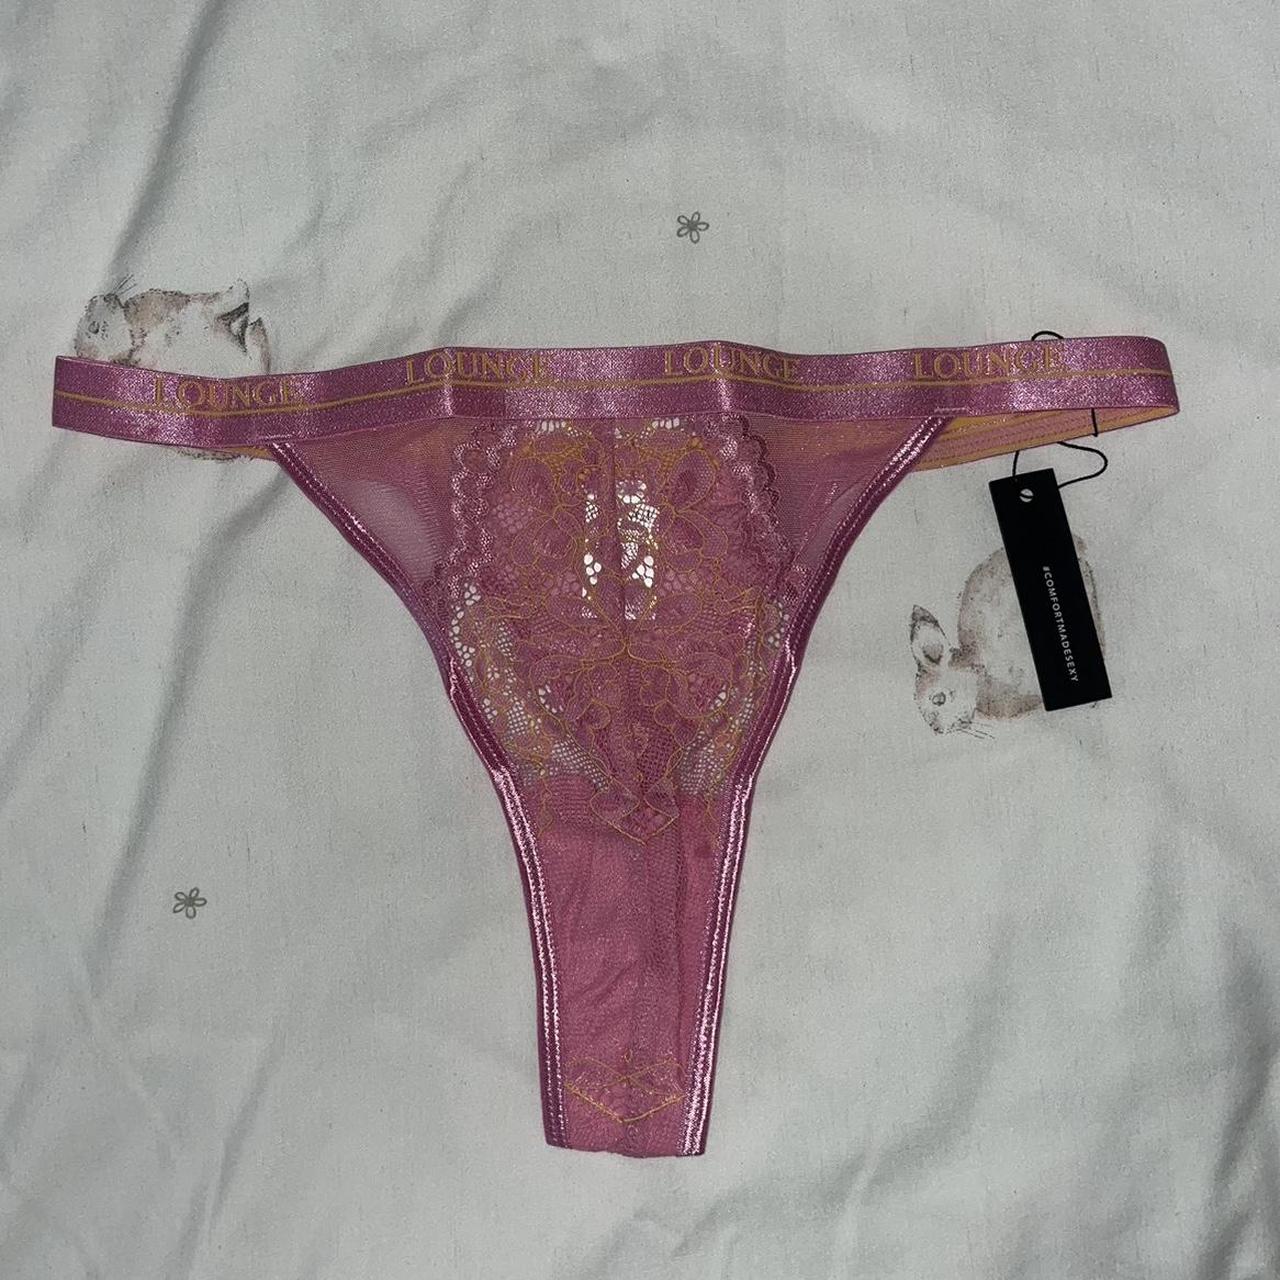 Used Panties $40/thong, Worn Items Message Me, Worn Panties